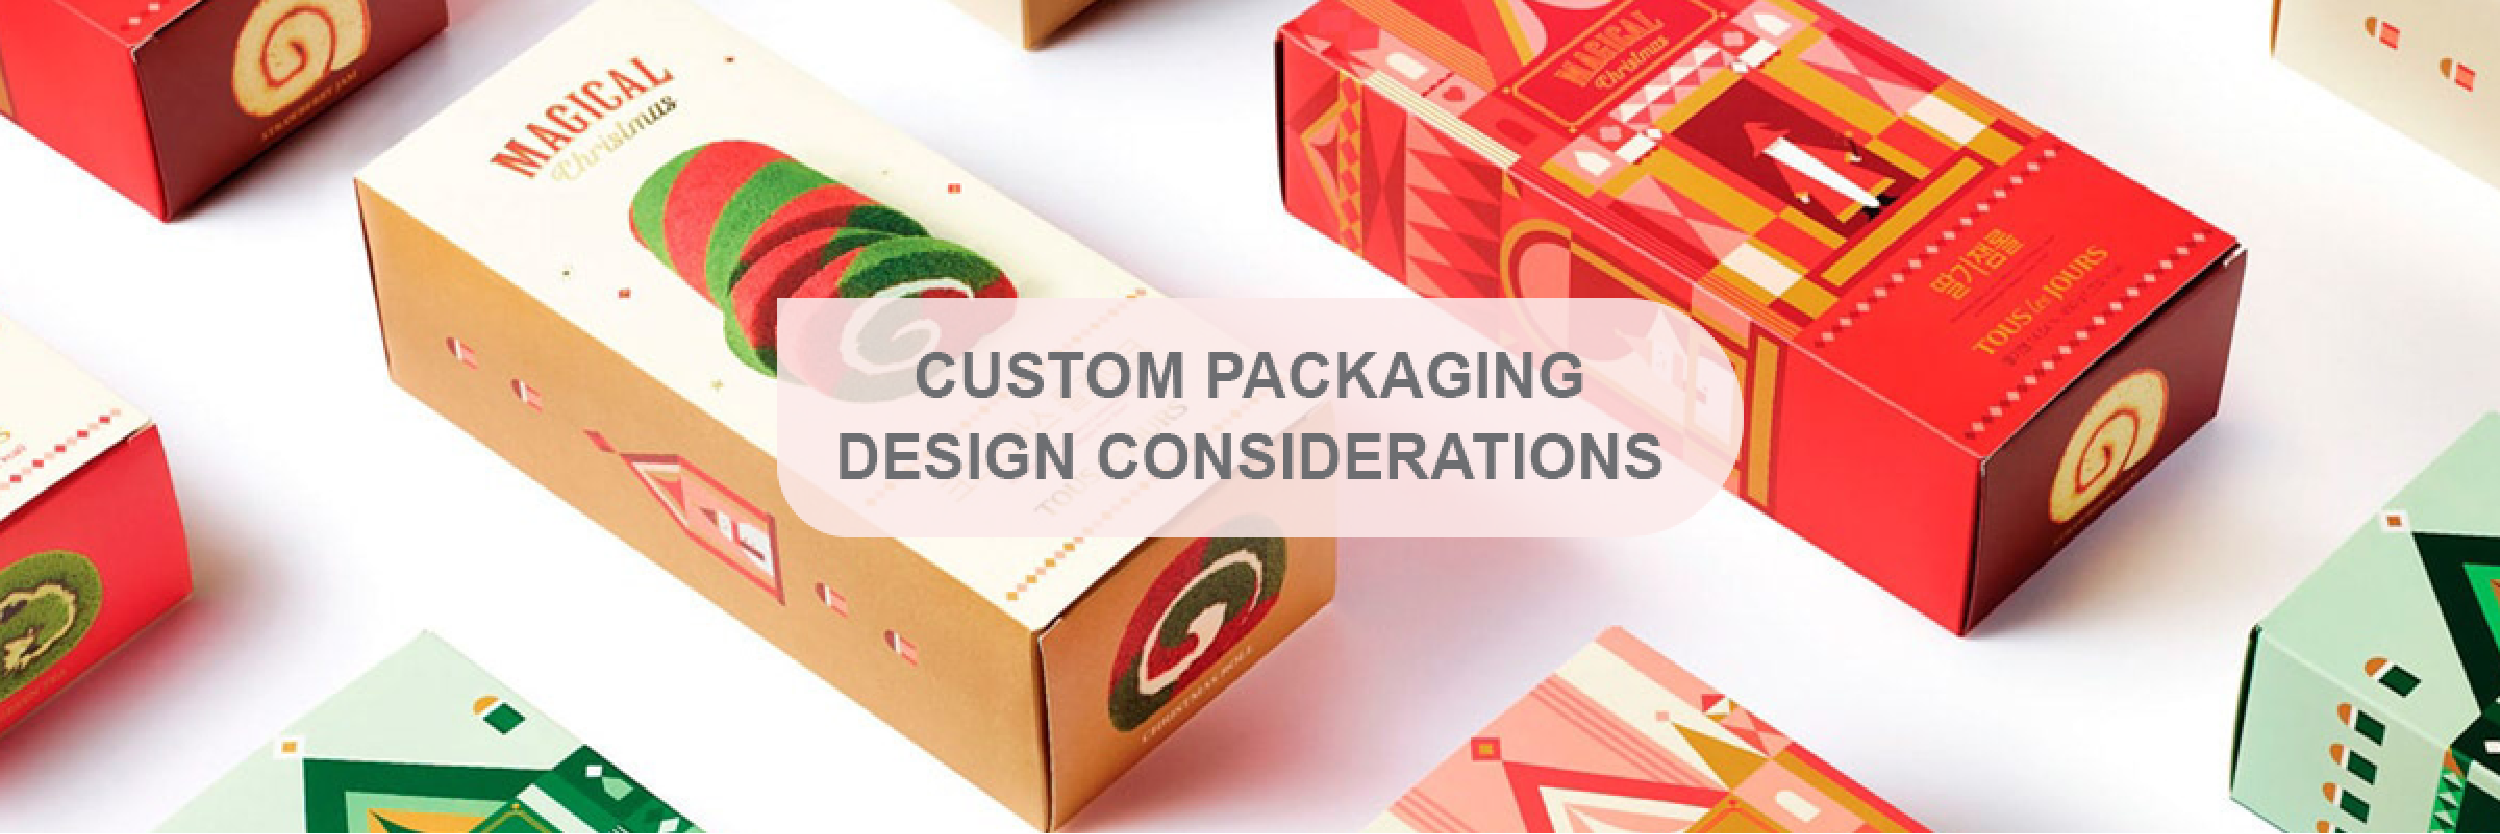 Custom Packaging Design Considerations